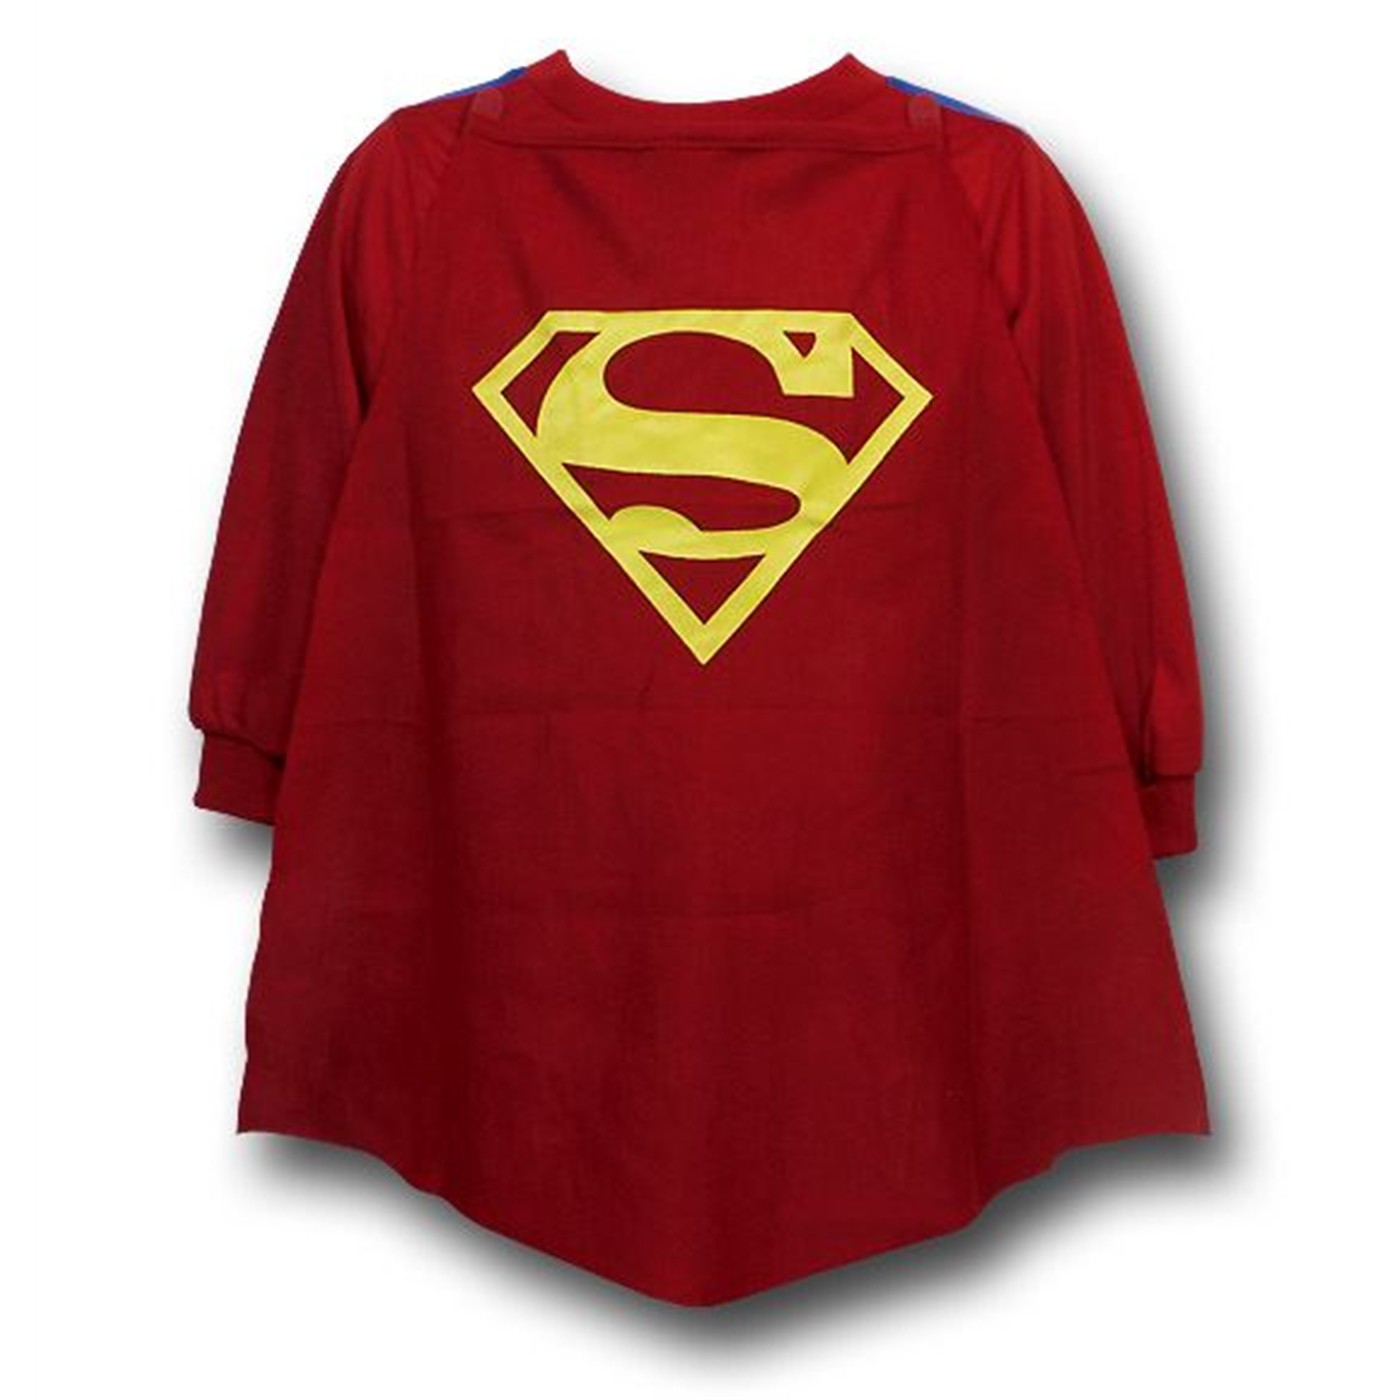 Superman Kids Caped Costume Pajama Set